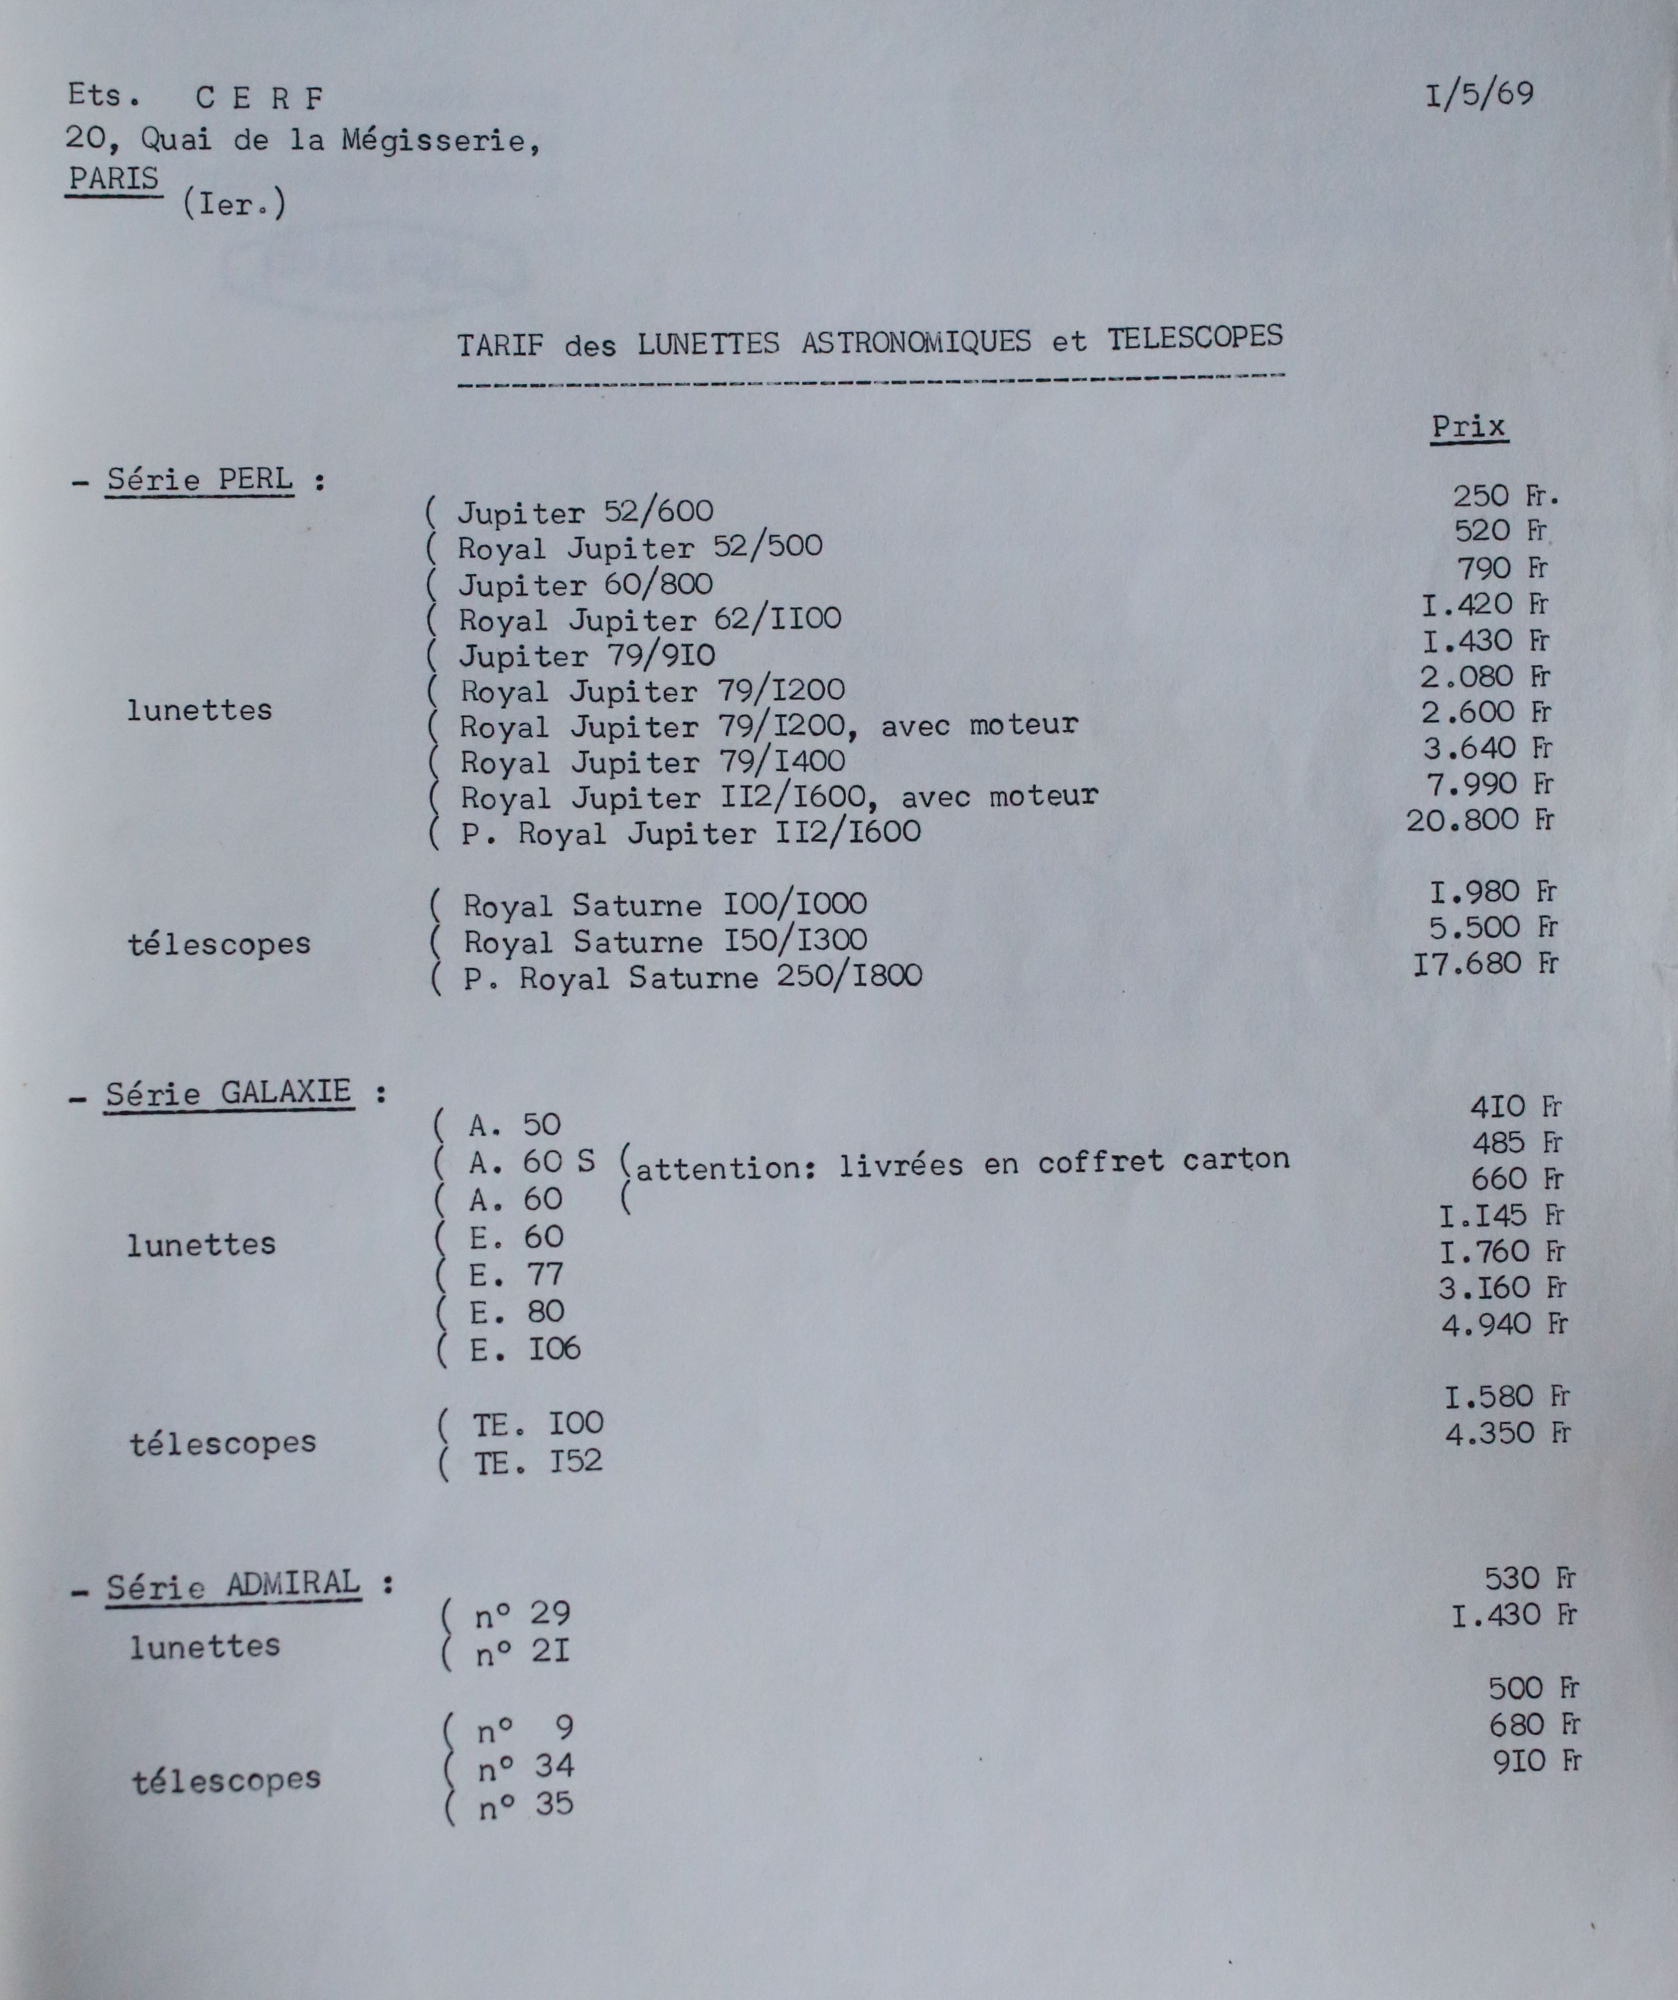 Perl tarif 1969.JPG